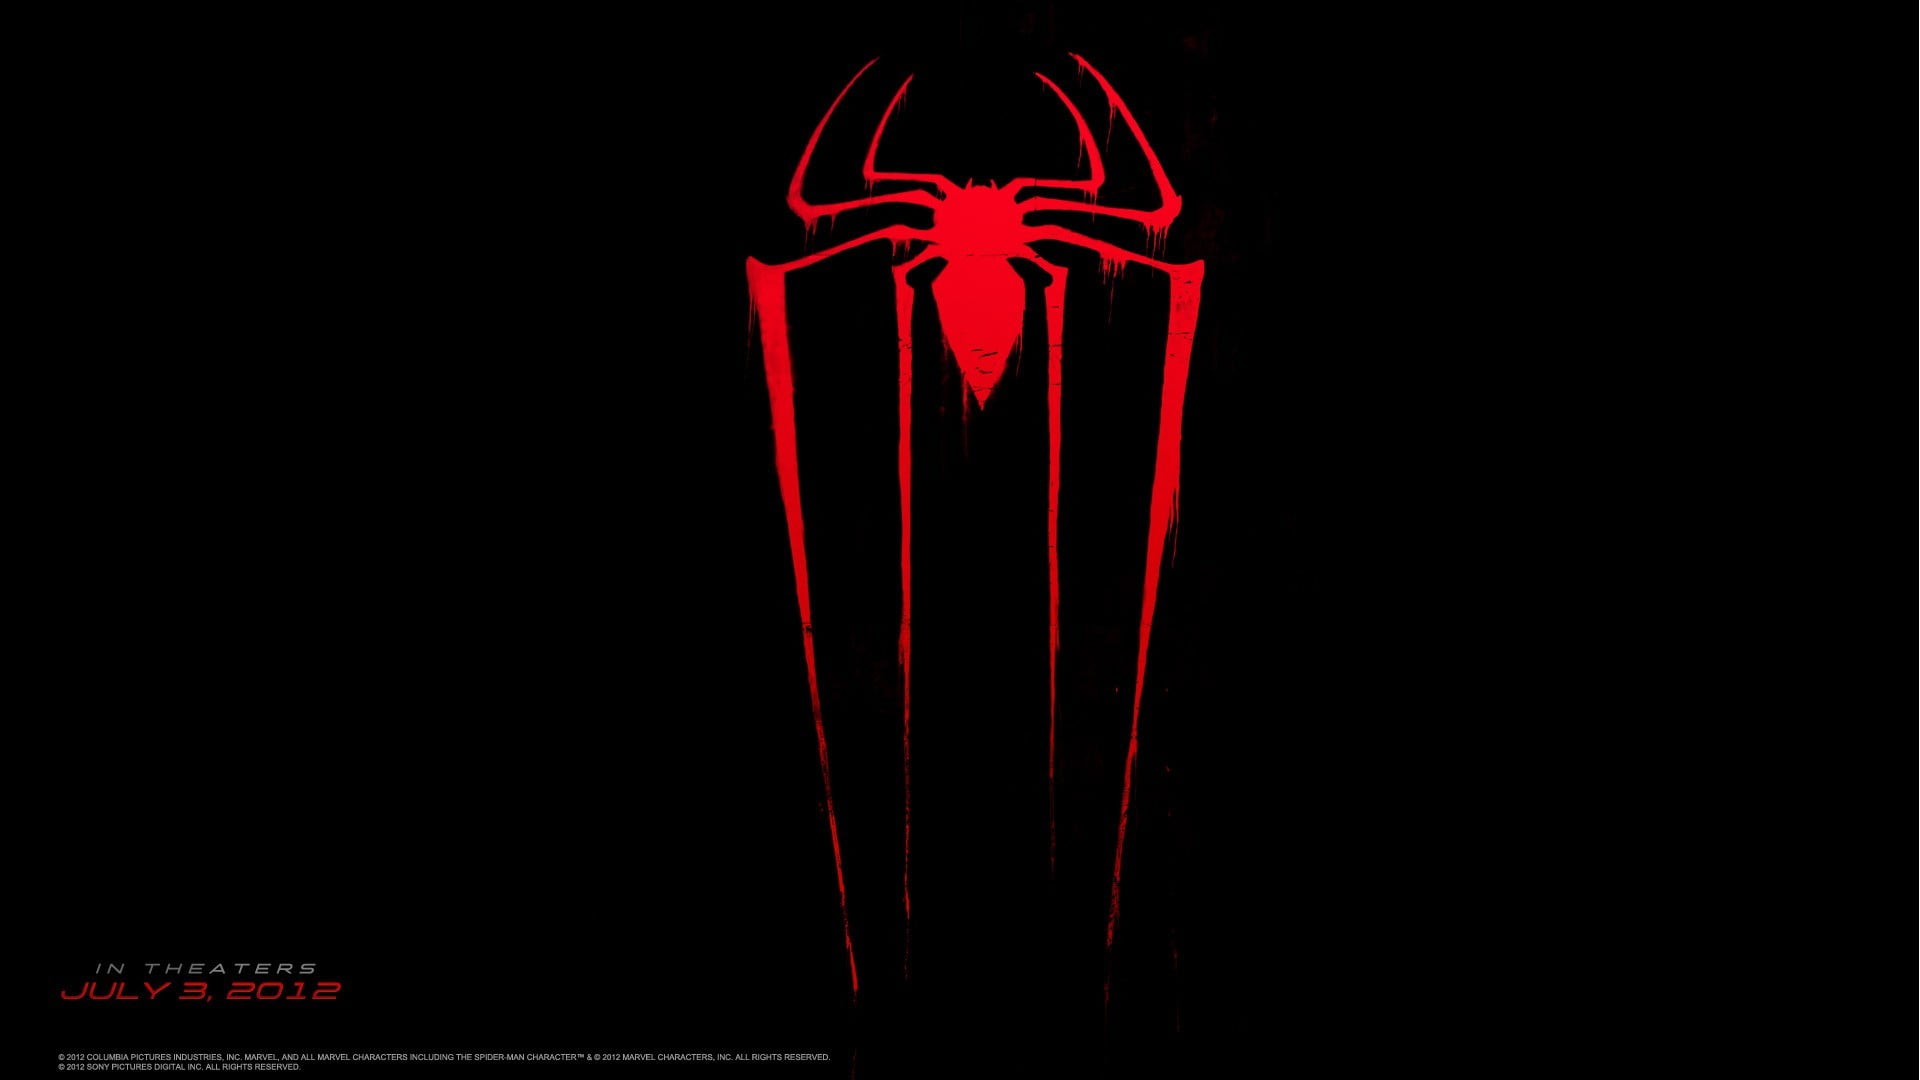 Spider-Man logo, The Amazing Spider-Man, Spider-Man, logo, symbols